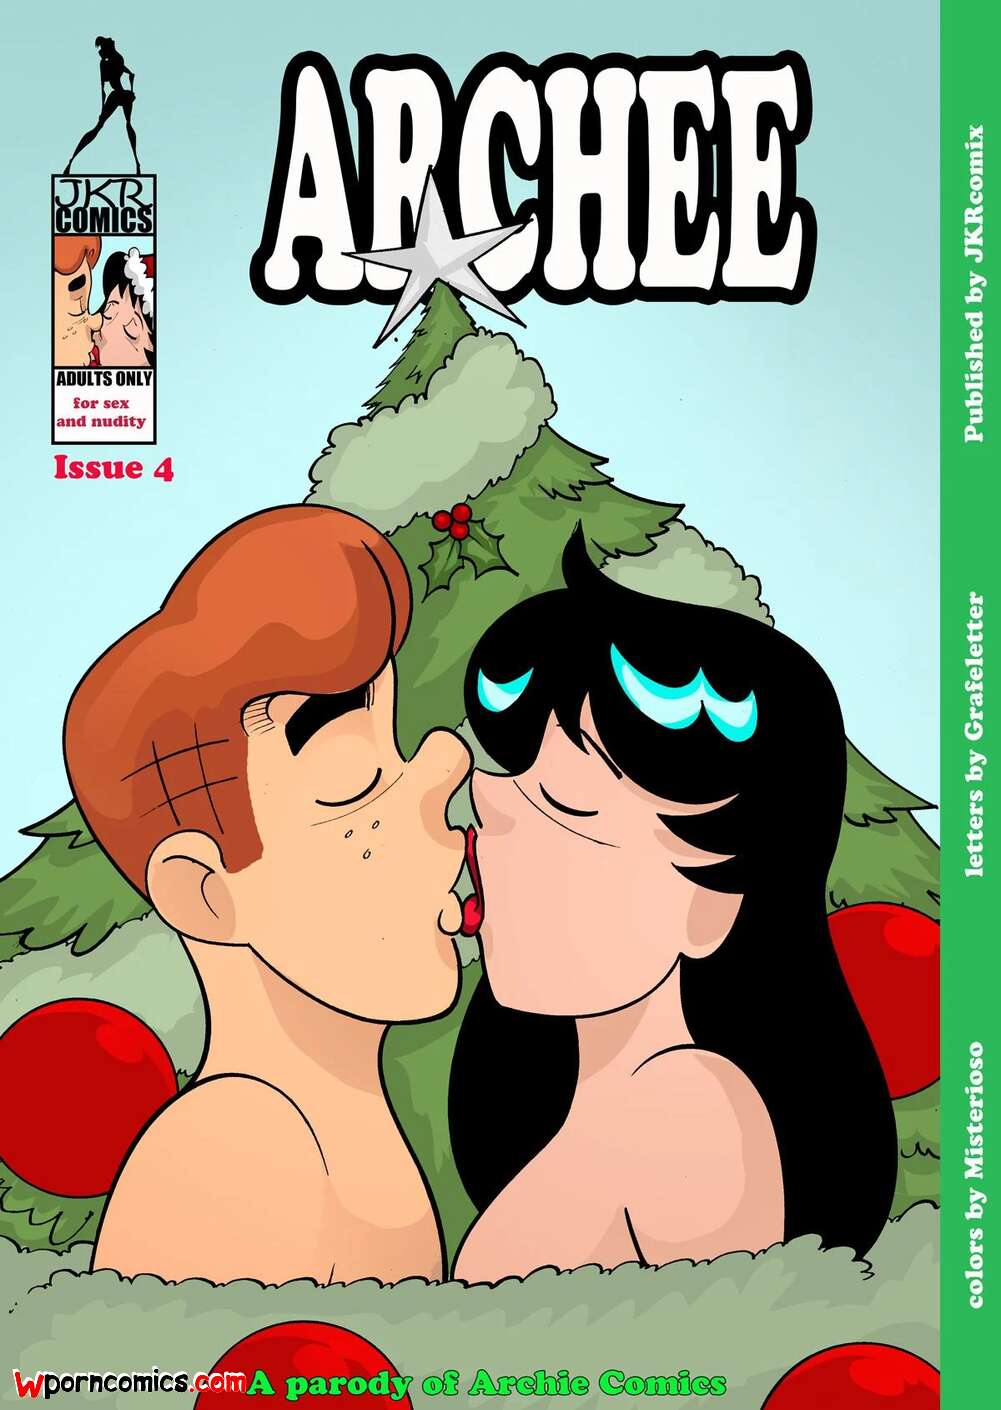 Archie Incest Porn - âœ…ï¸ Porn comic Archee. Chapter 4. Archies. JKRComix. Sex comic family was  celebrating | Porn comics in English for adults only | sexkomix2.com